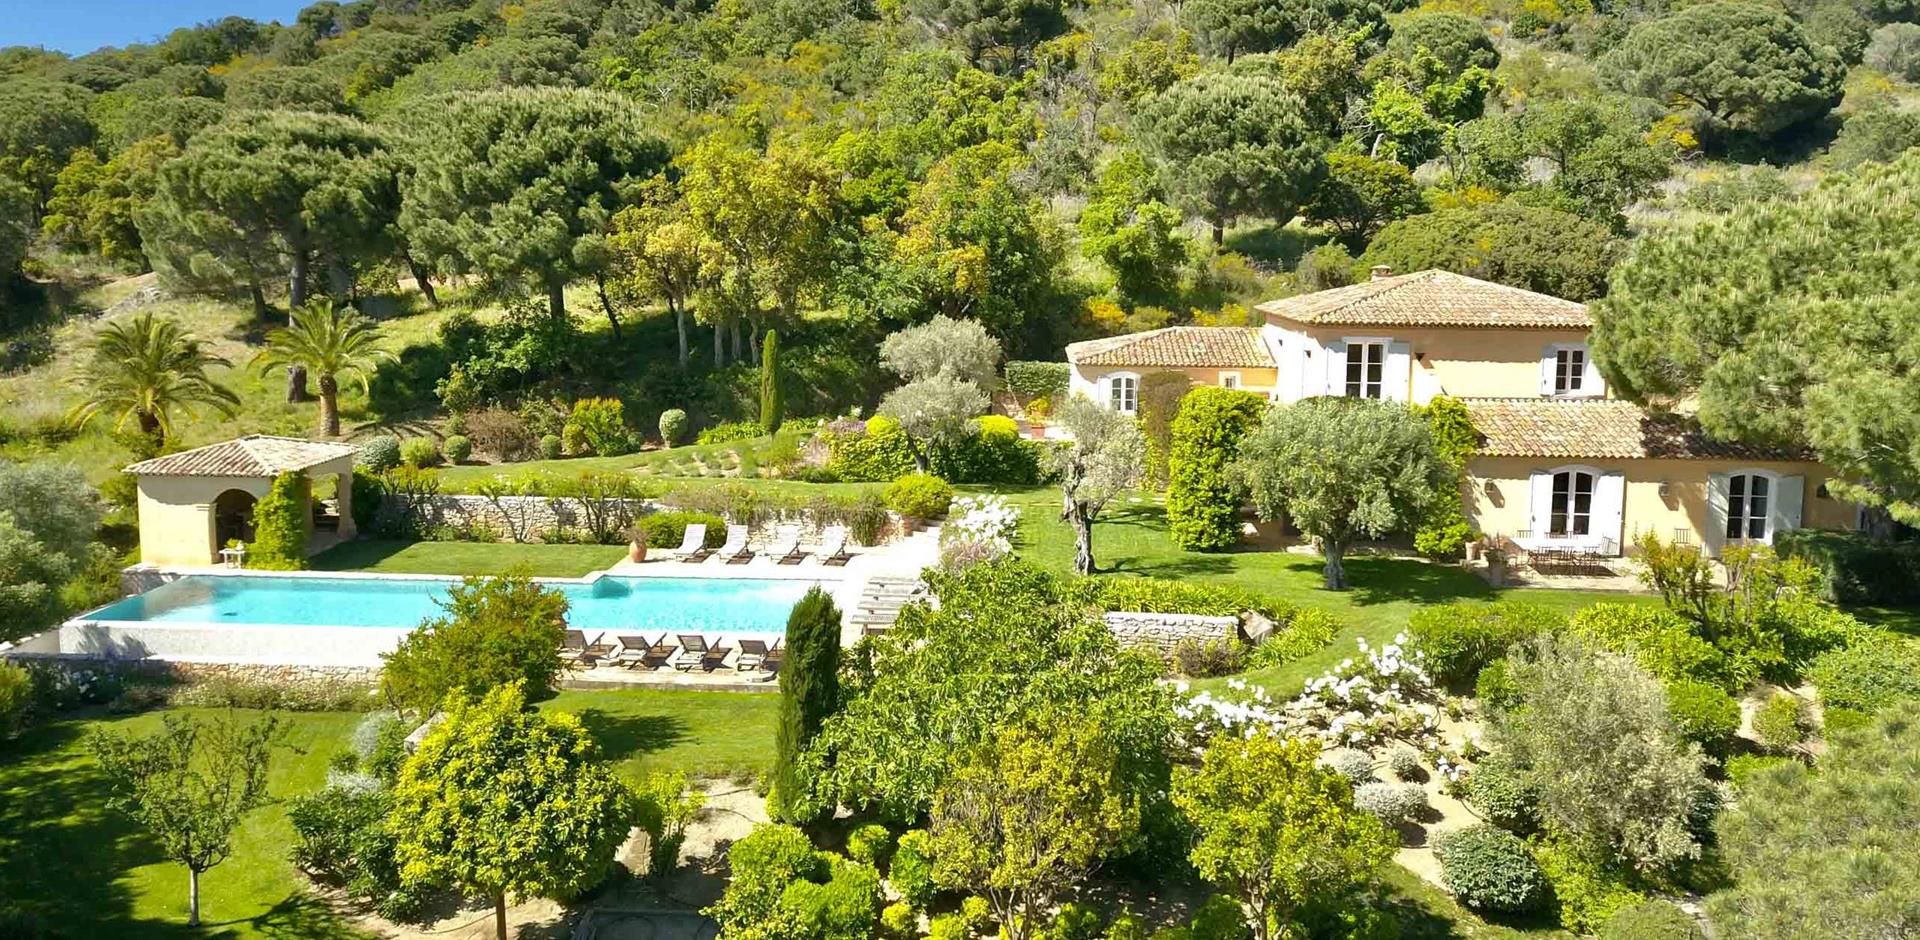 Villa Ramatuelle, Saint Tropez, Cote d'Azur, France, Europe